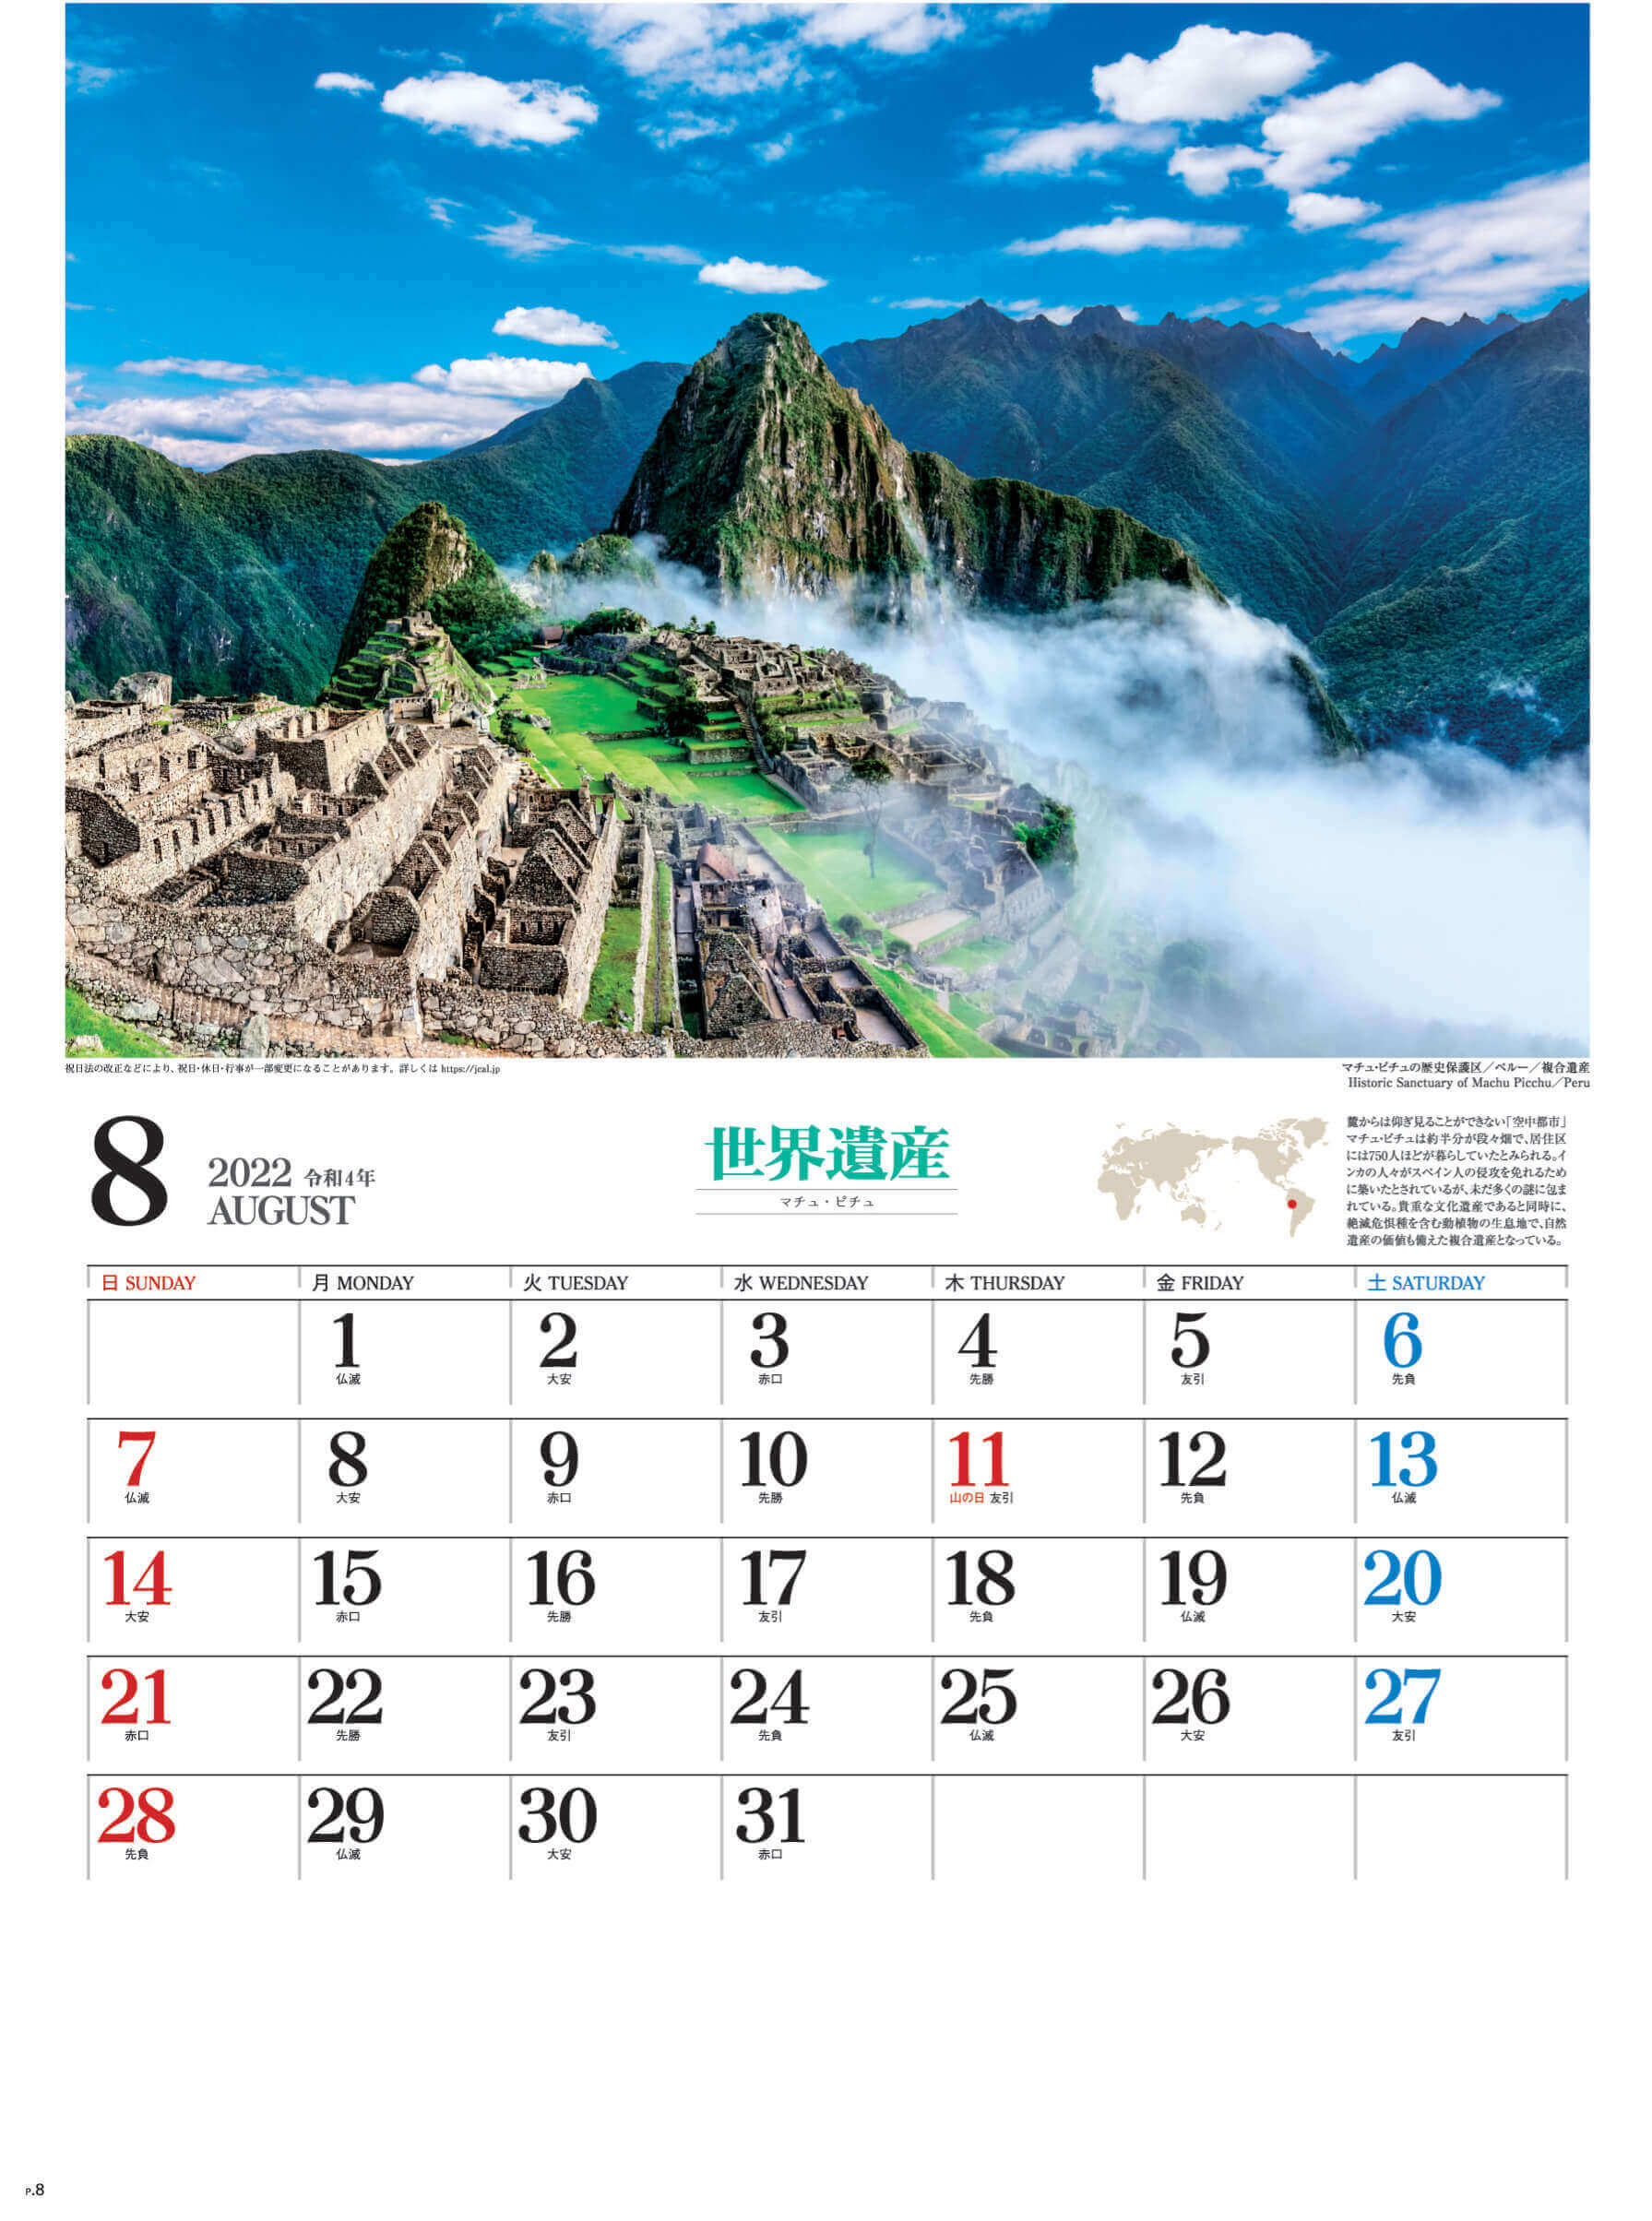 8月 マチ・ピチュ ペルー ユネスコ世界遺産 2022年カレンダーの画像